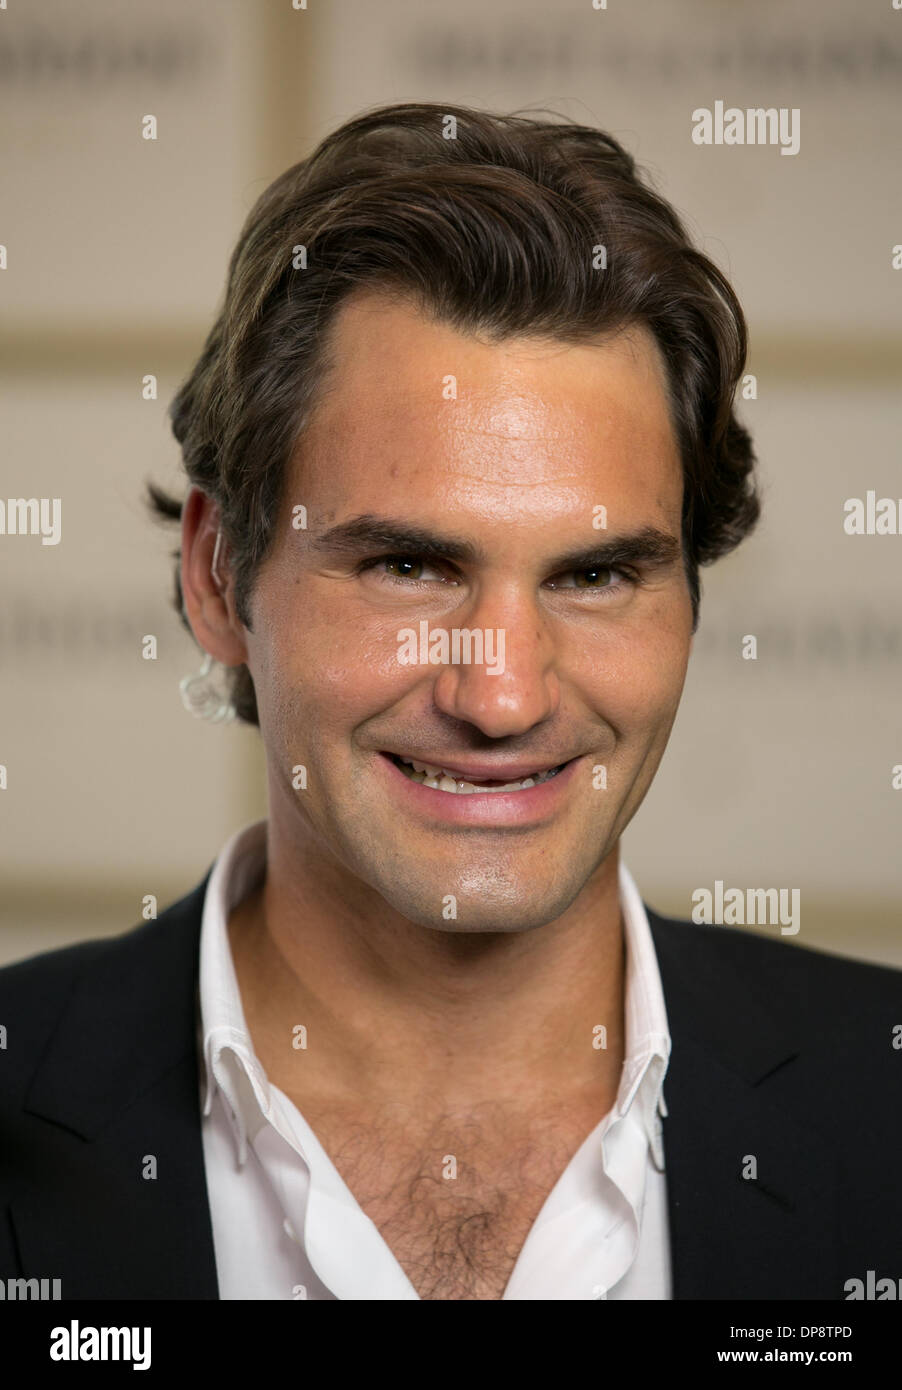 Roger Federer en el evento de Moet & Chandon, Melbourne, 9 de enero de 2014. Foto de stock